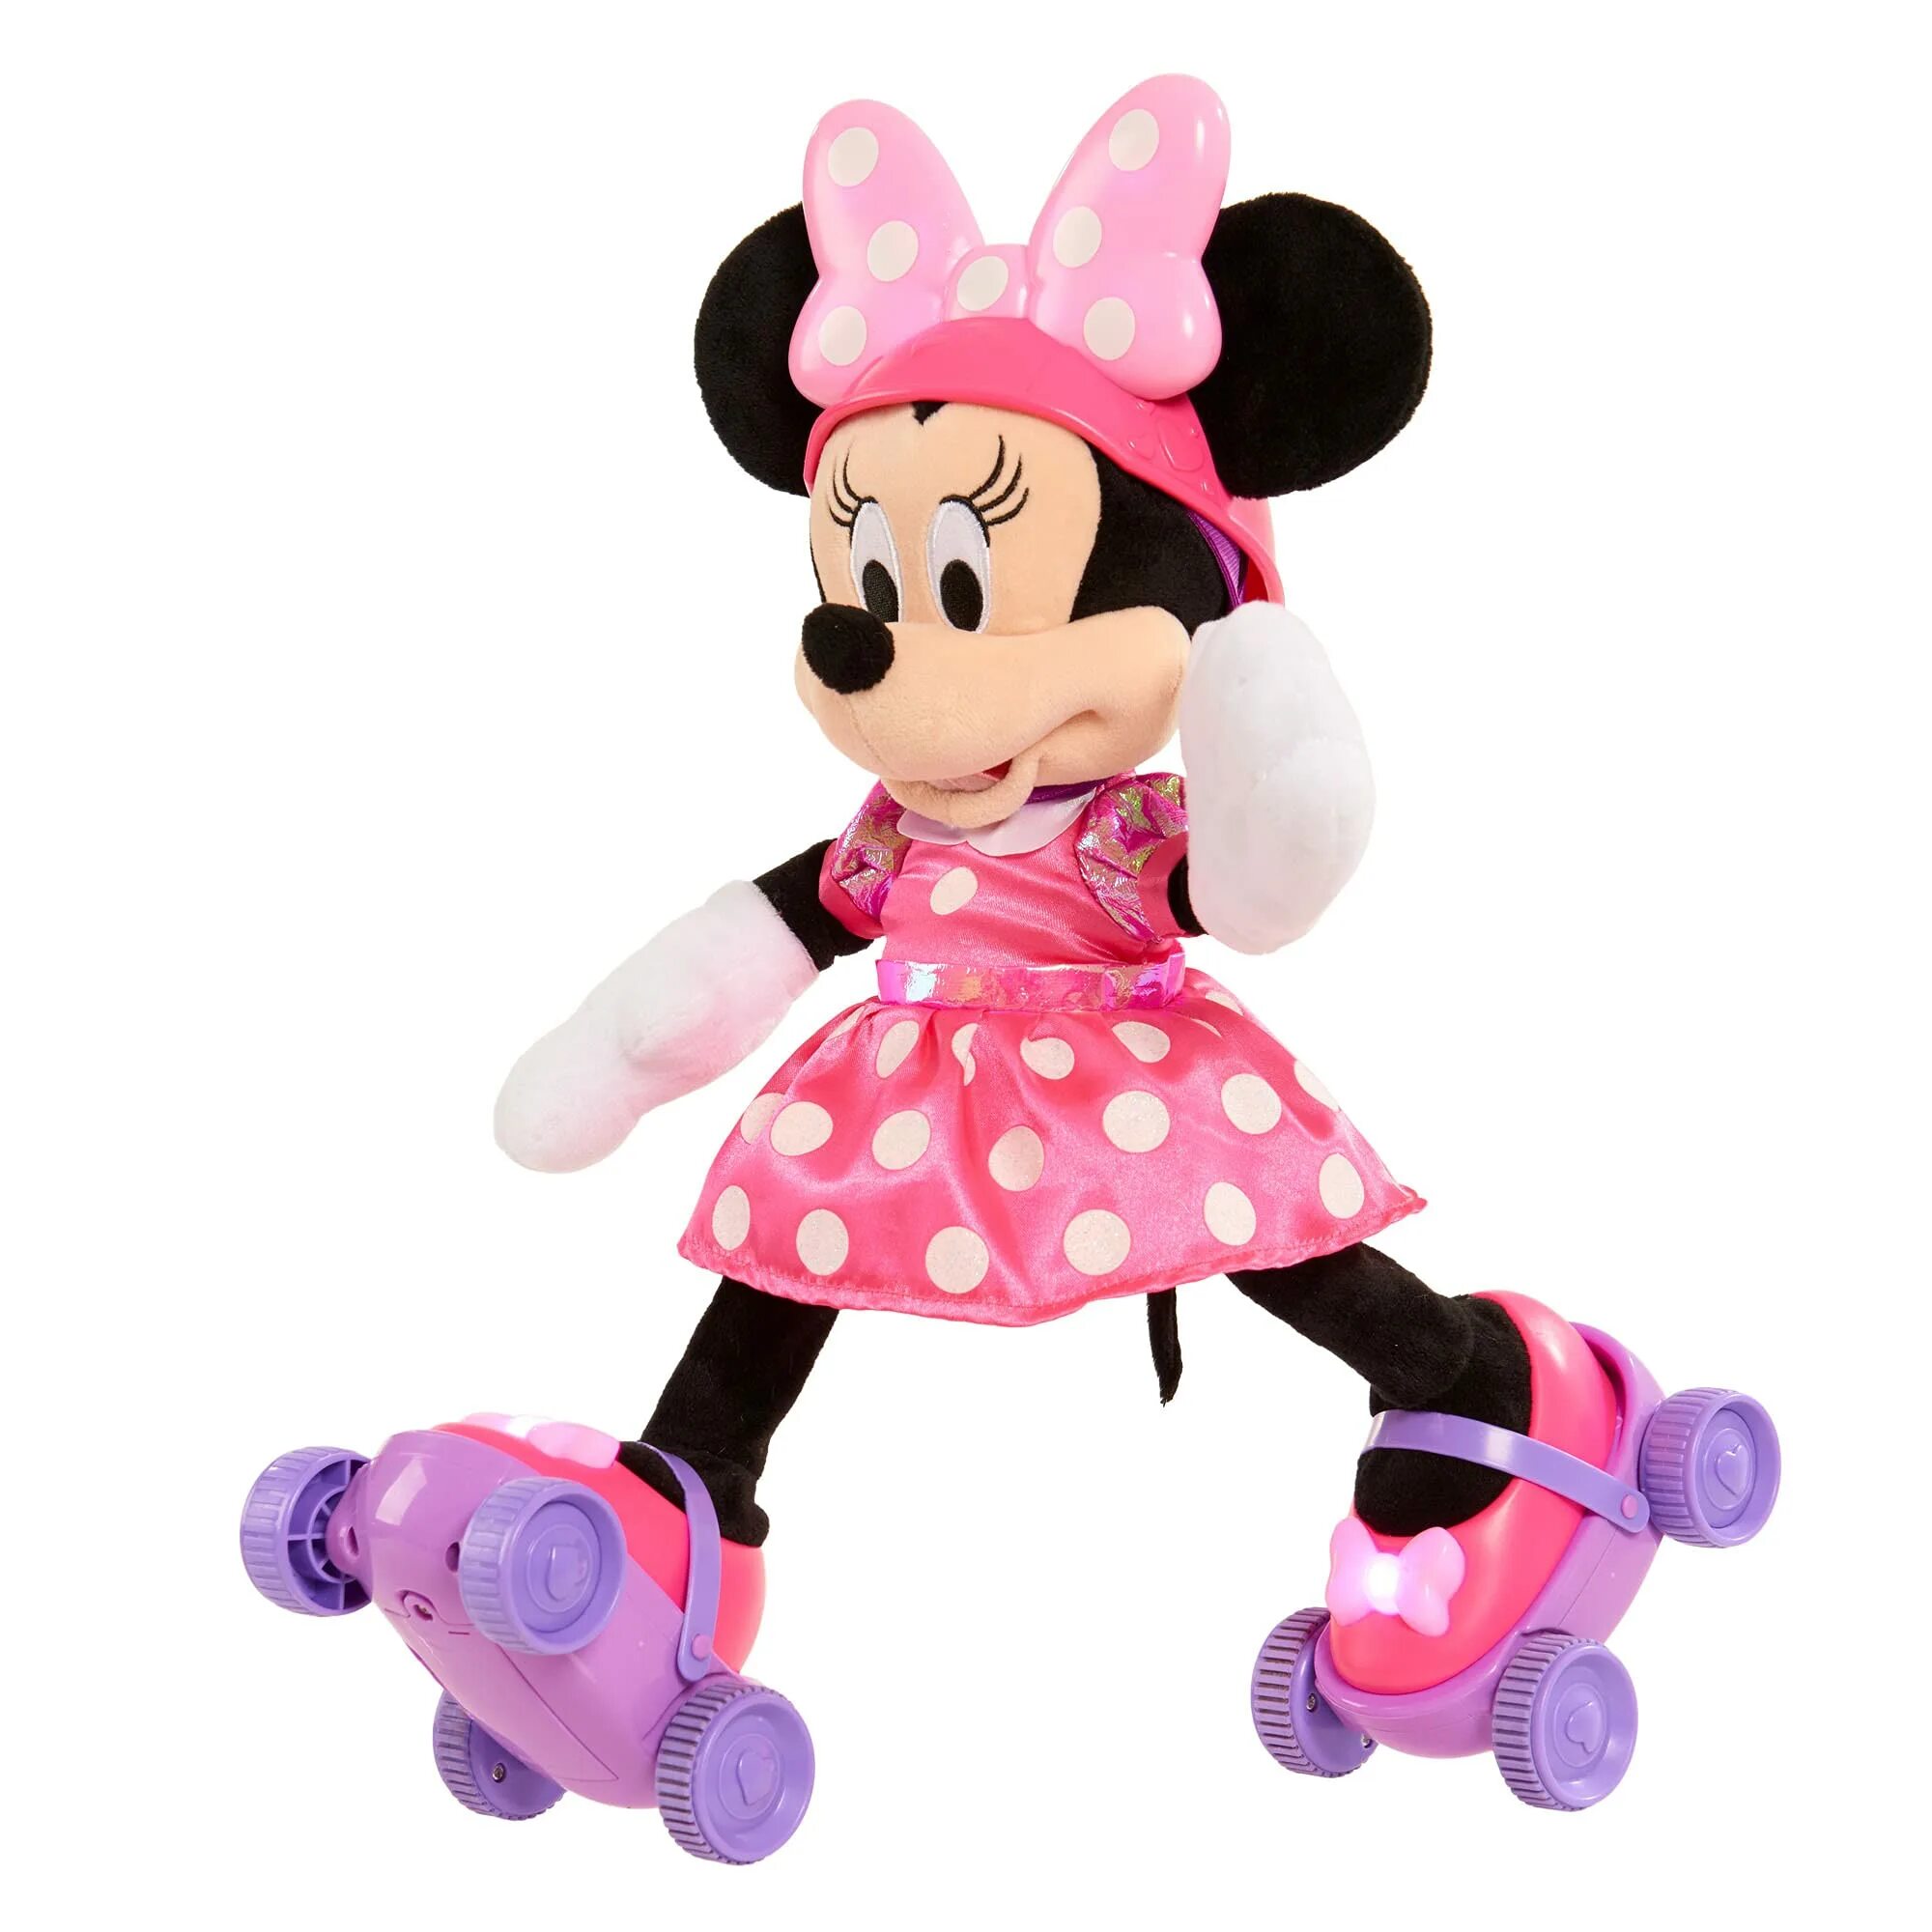 Фф минни. Игрушка Минни Маус Дисней. Игрушка Мики Маус и мини. Minnie Mouse Disney игрушка. Игрушки Микки и Минни Маусы.